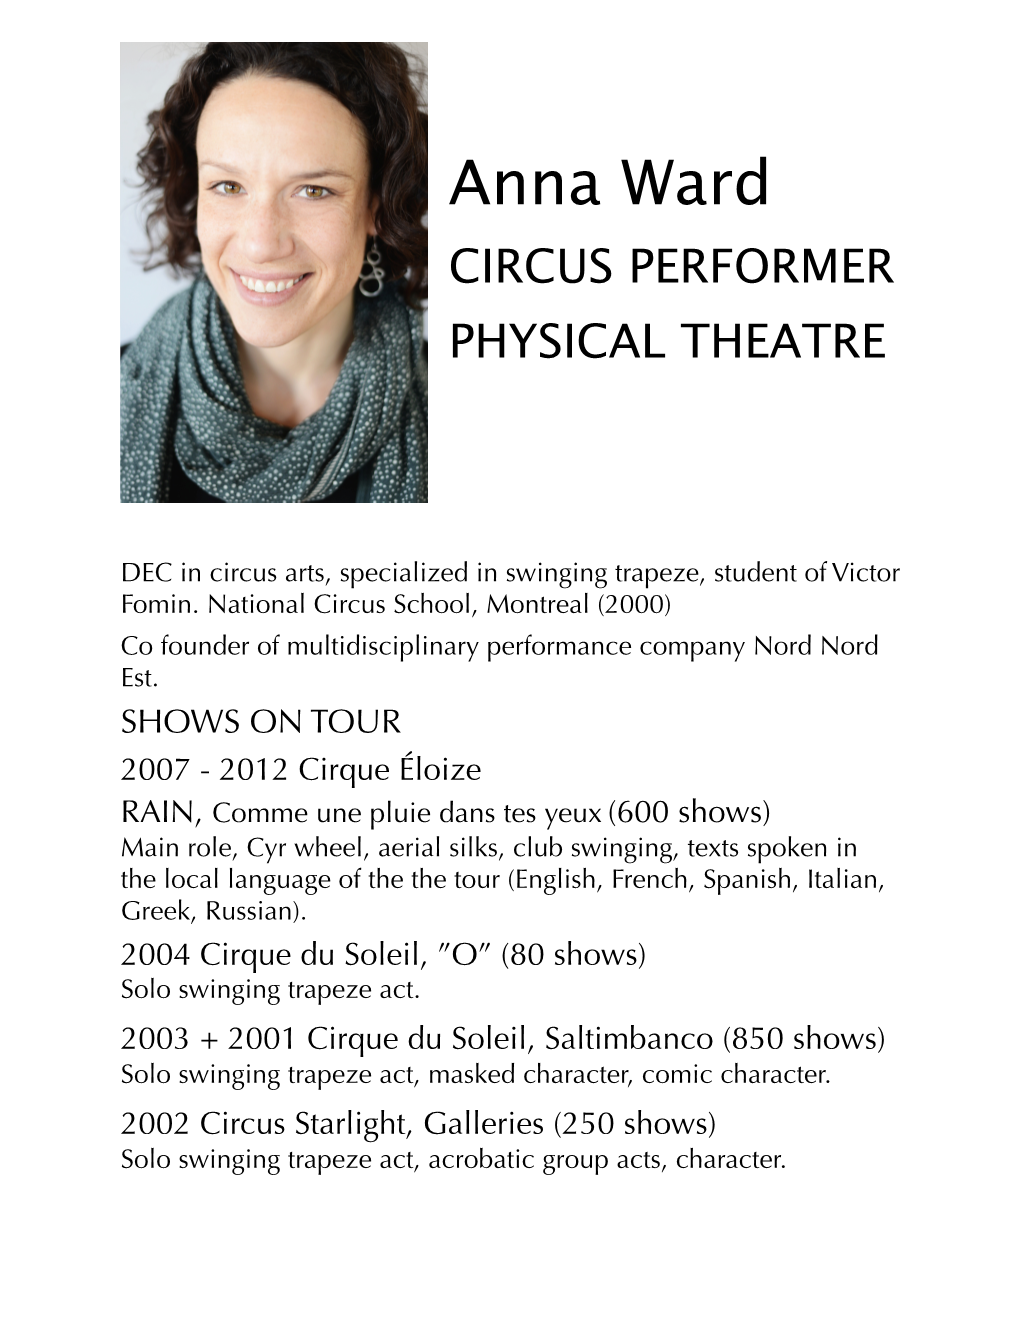 Anna Ward CV